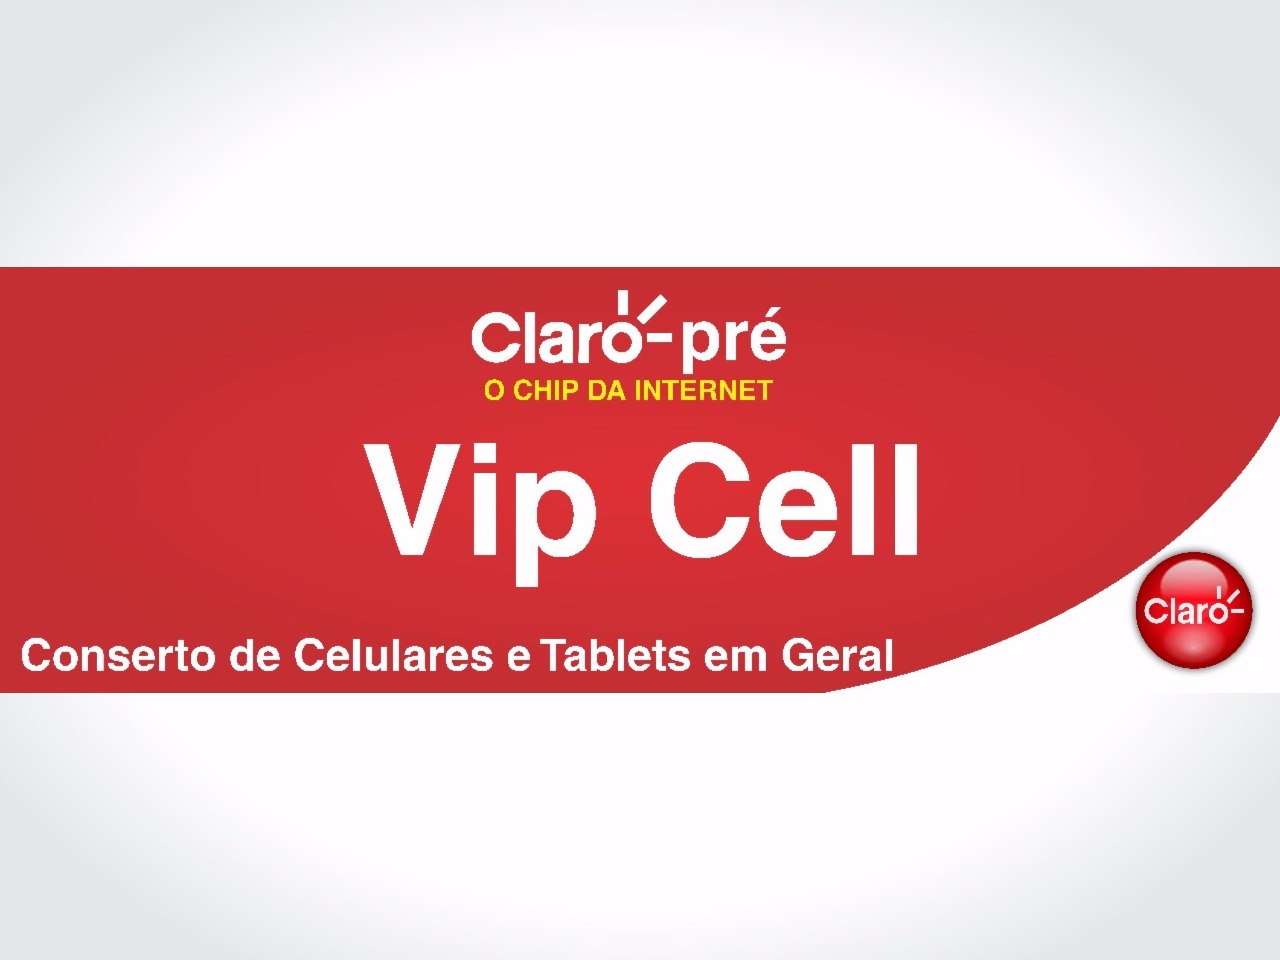 VIP CELL - CLARO-PRÉ